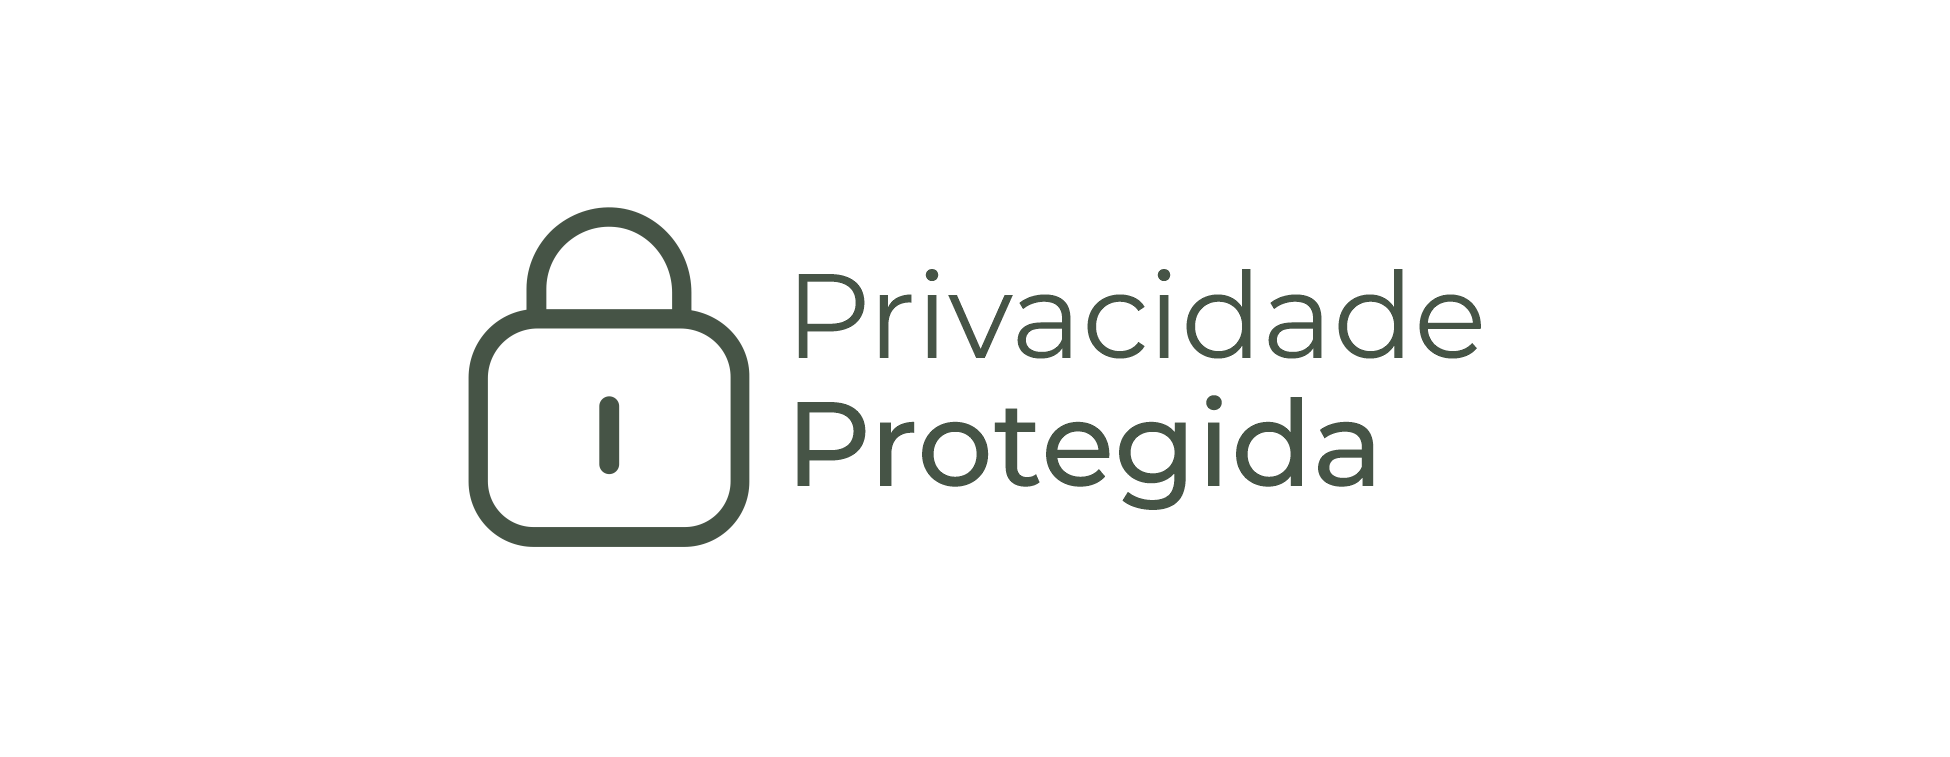 PRIVACIDADE PROTEGIDA